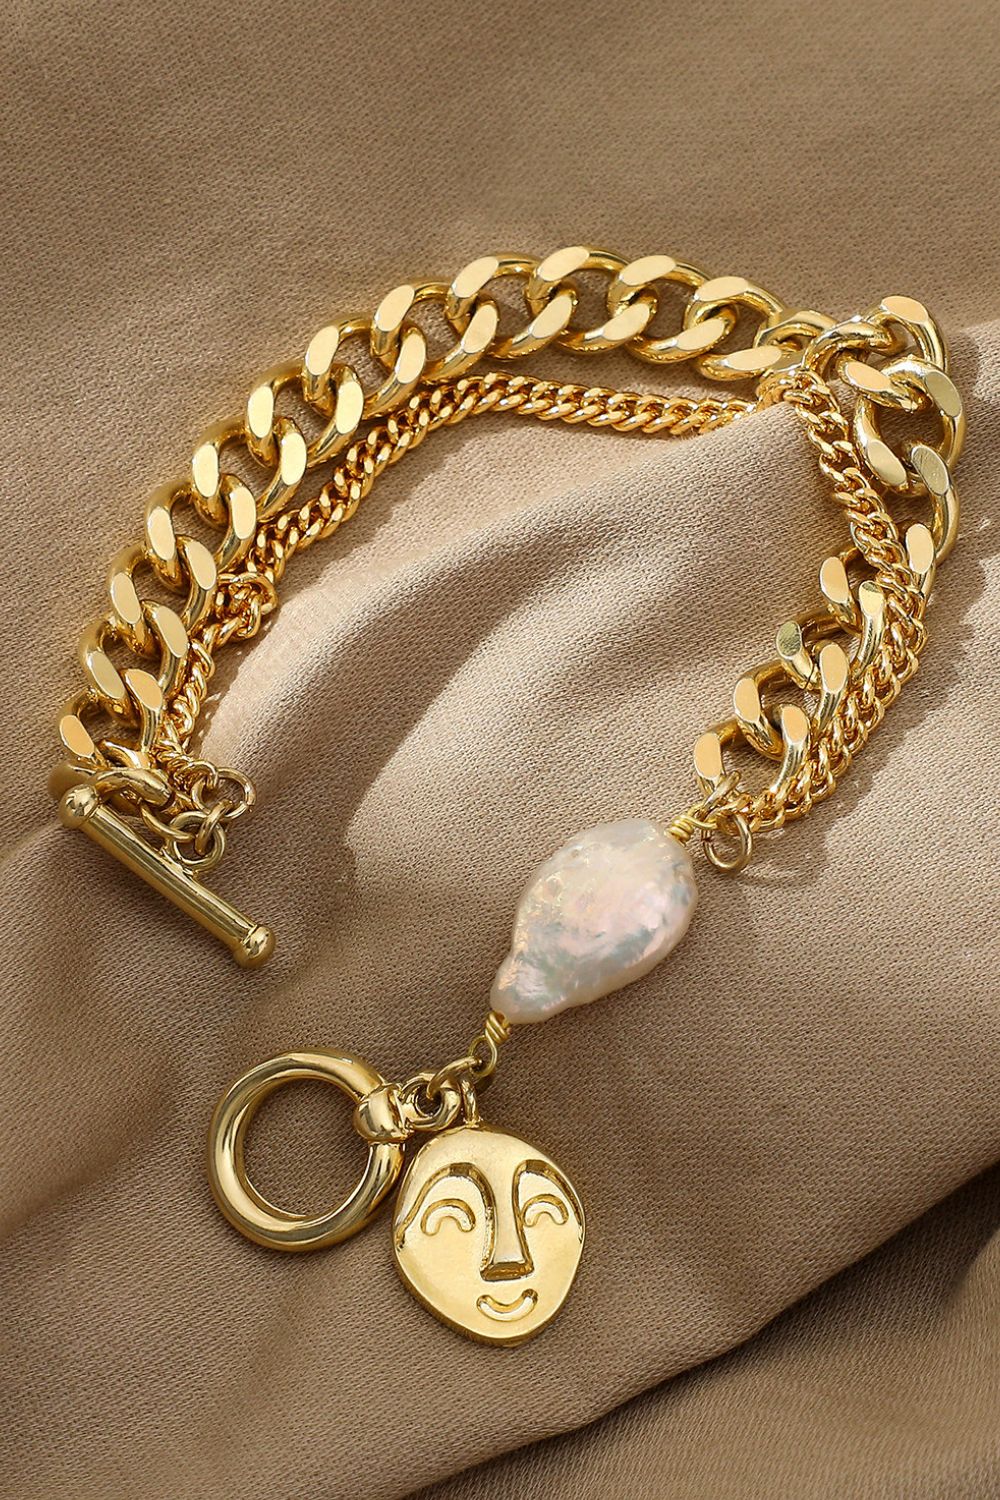 Gold Chain & Pearl Bracelet - Gold / One Size - Women’s Jewelry - Bracelets - 3 - 2024